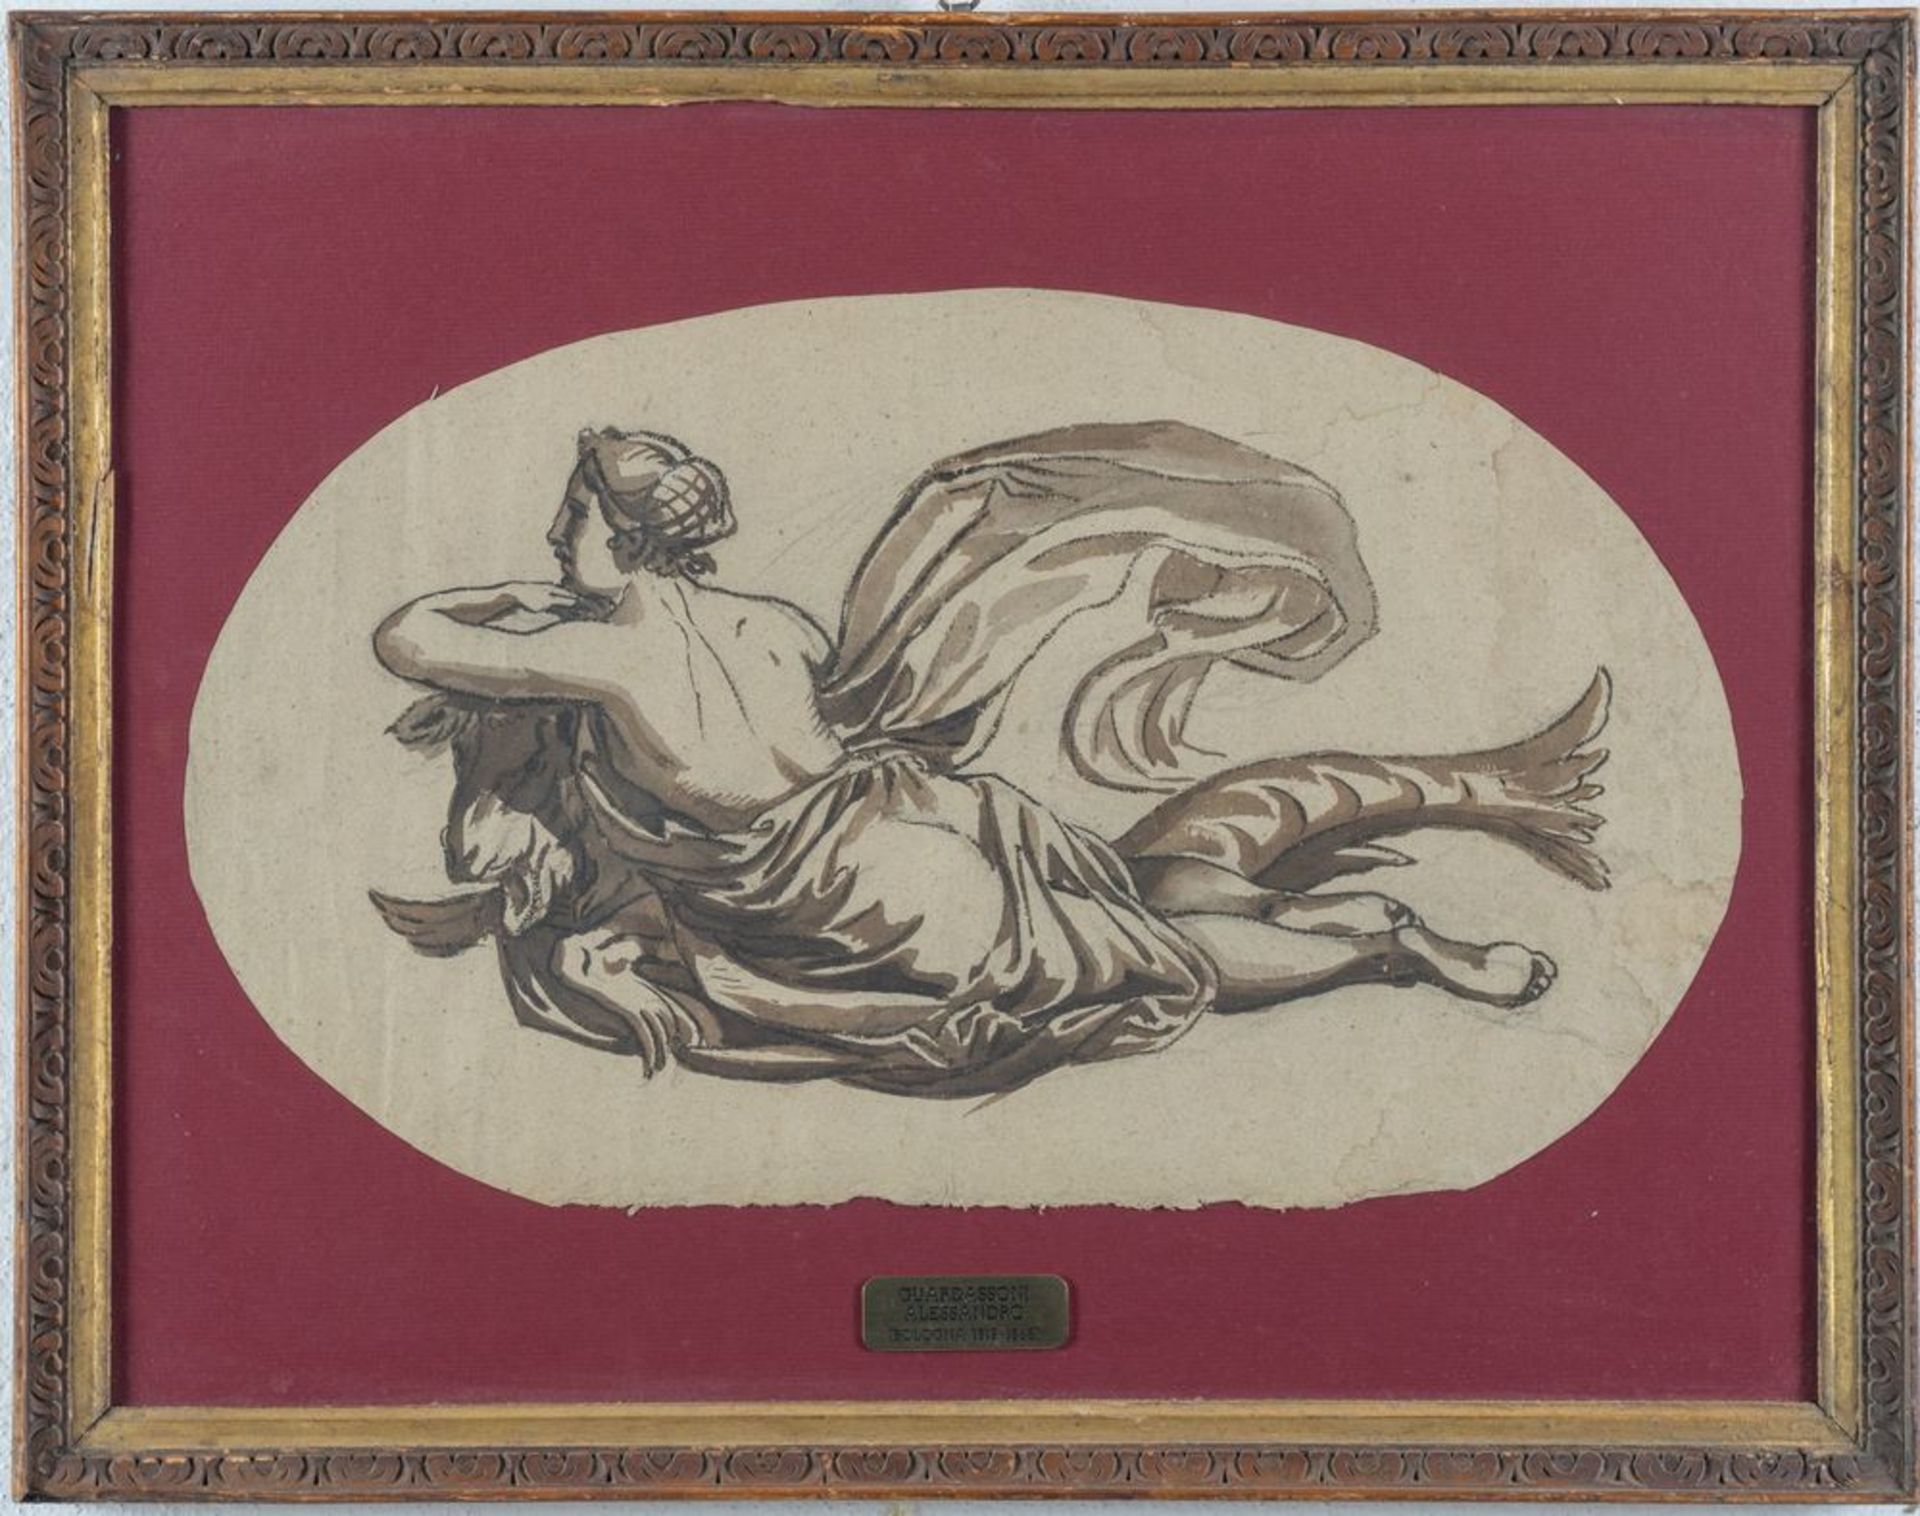 ALESSANDRO GUARDASSONI (Bologna 1819 â€“ 1888) "Senza titolo". Acquerello su carta. Cm 31,5x53,5.